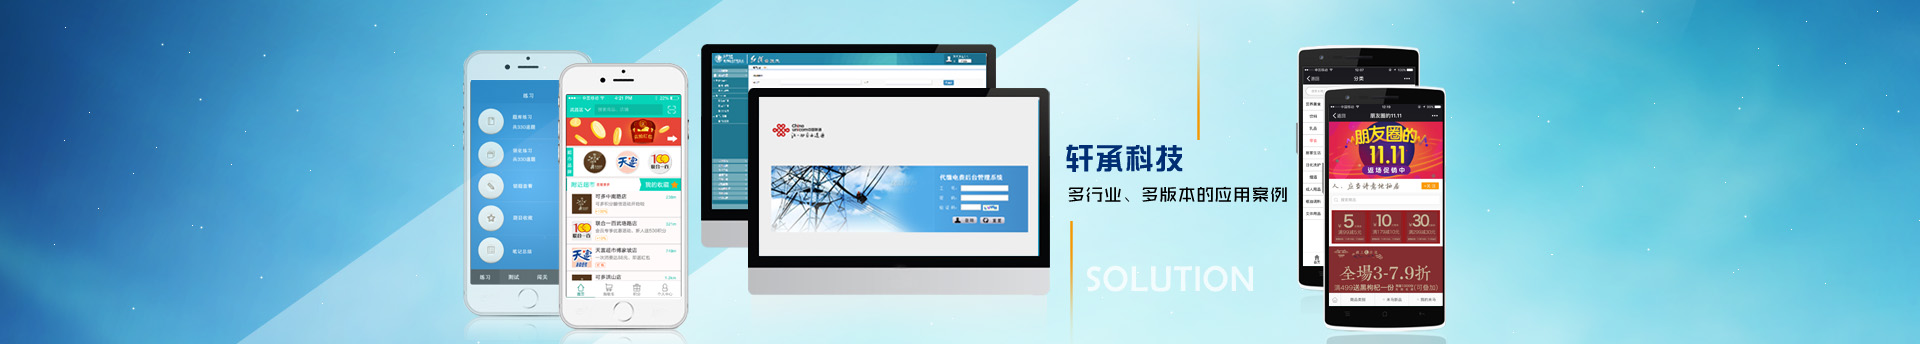 武汉软件开发-武汉网站建设-武汉APP开发-武汉微信小程序开发-武汉数据可视化开发—关于我们